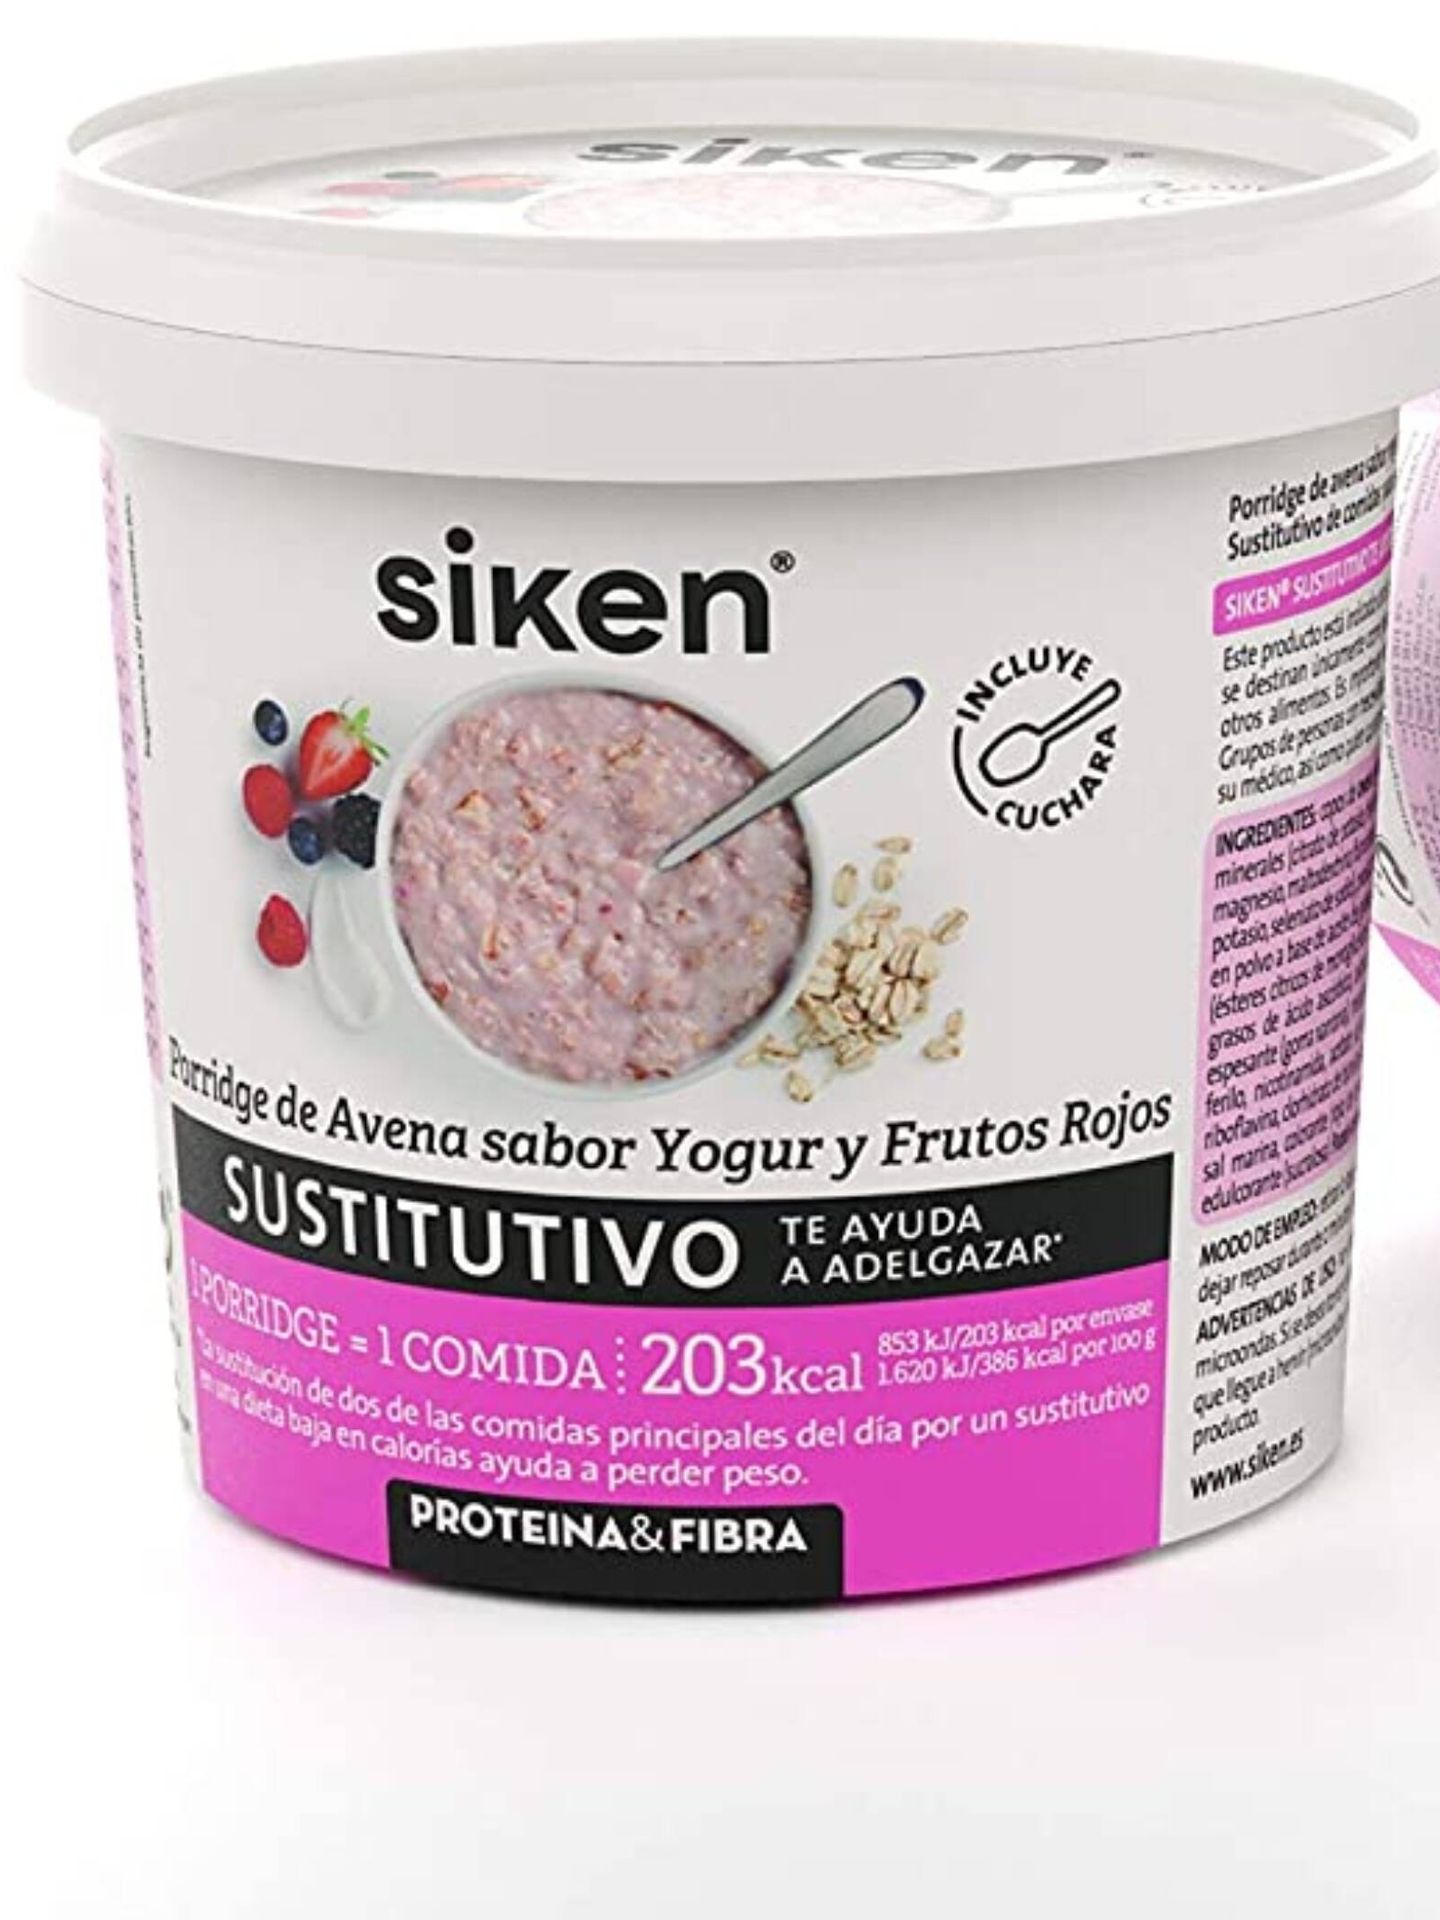 Porridge de avena Siken, a la venta en Amazon. (Cortesía)